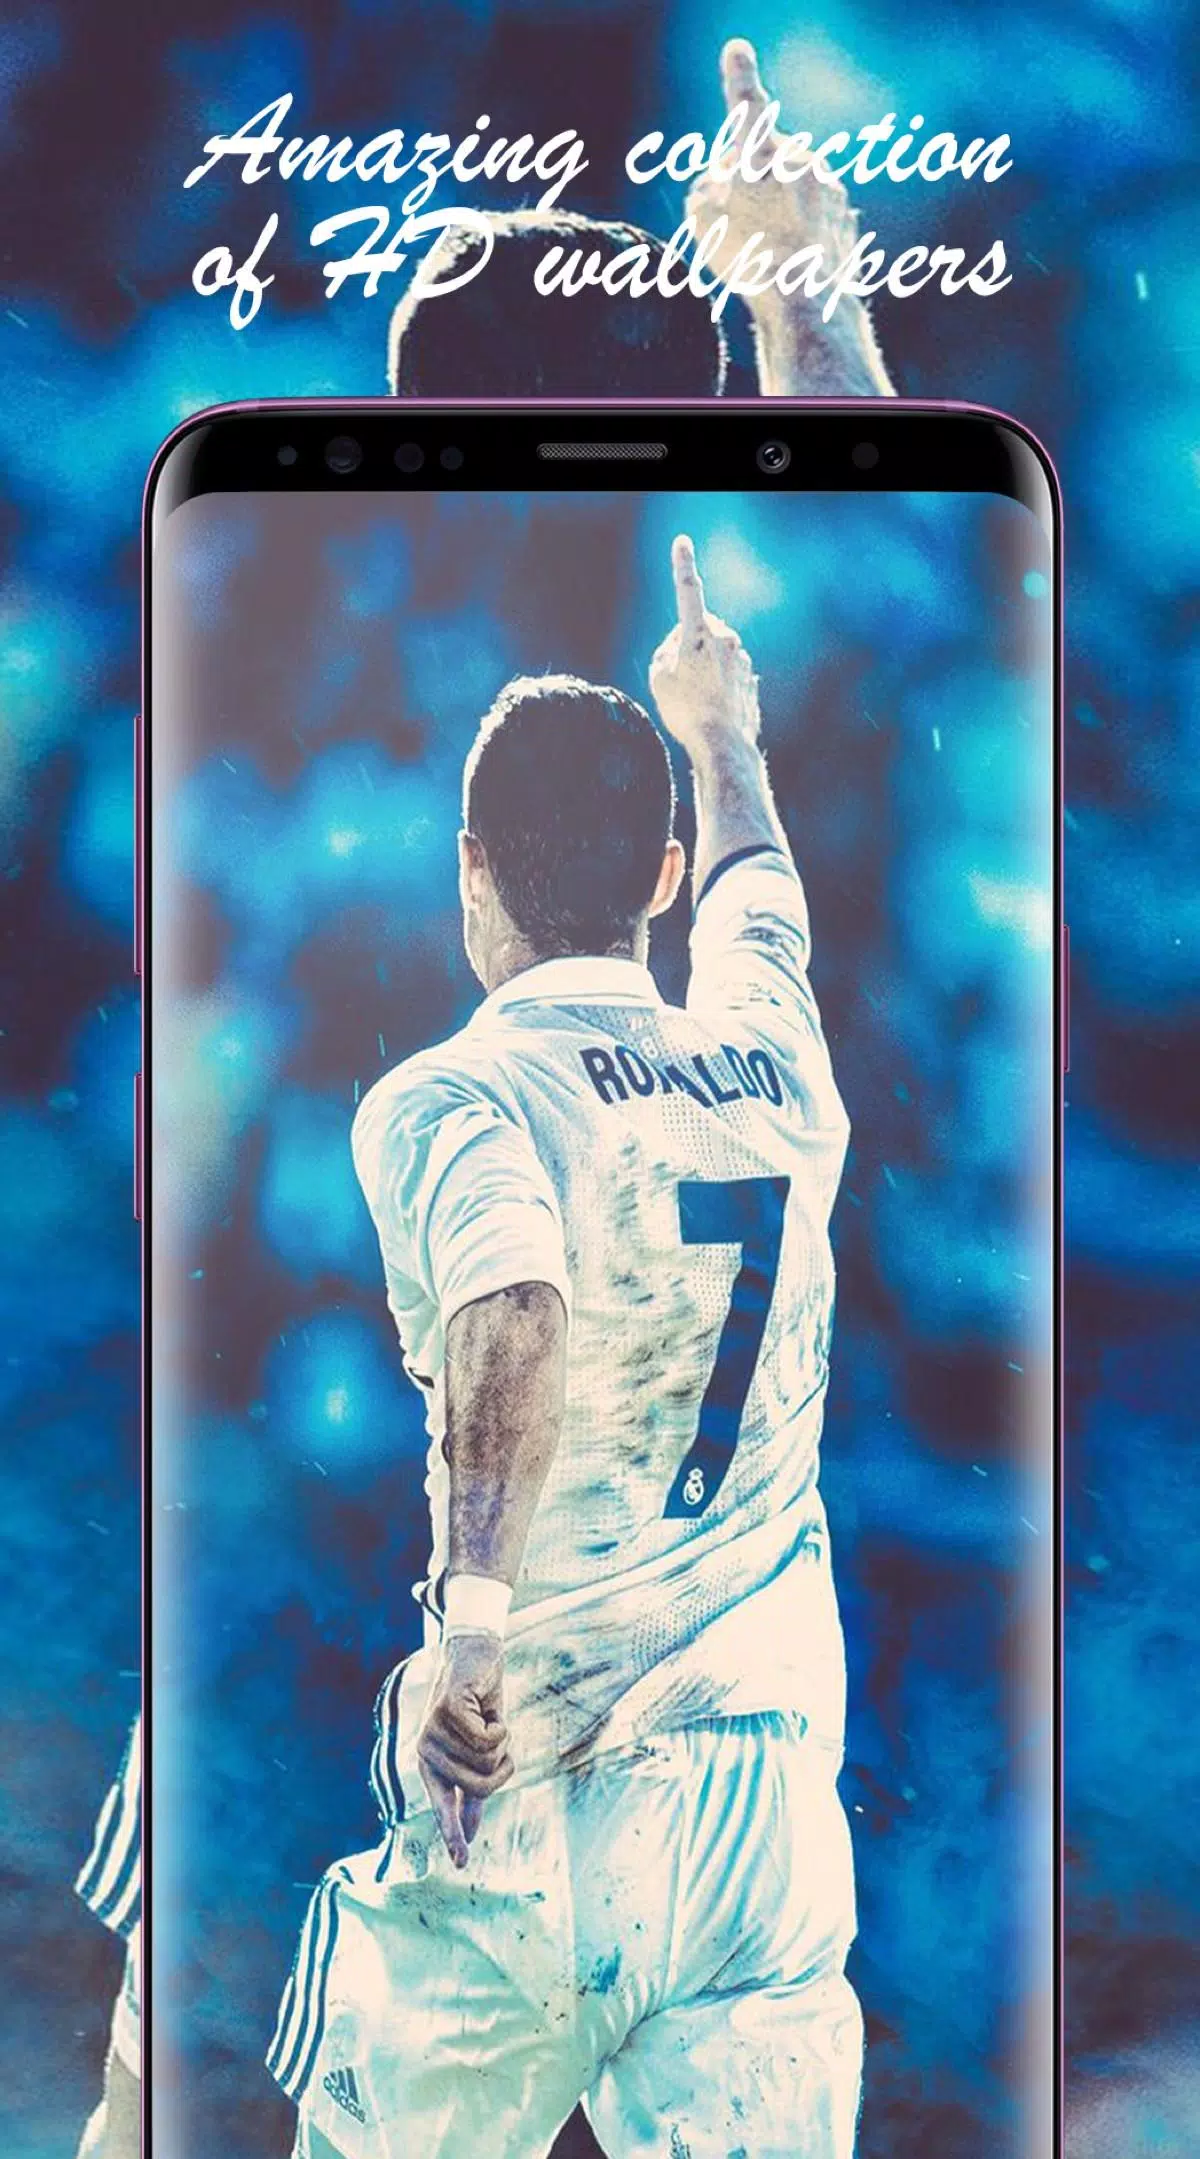 Descarga de APK de Fondos de Cristiano Ronaldo HD 4K 2018 para Android